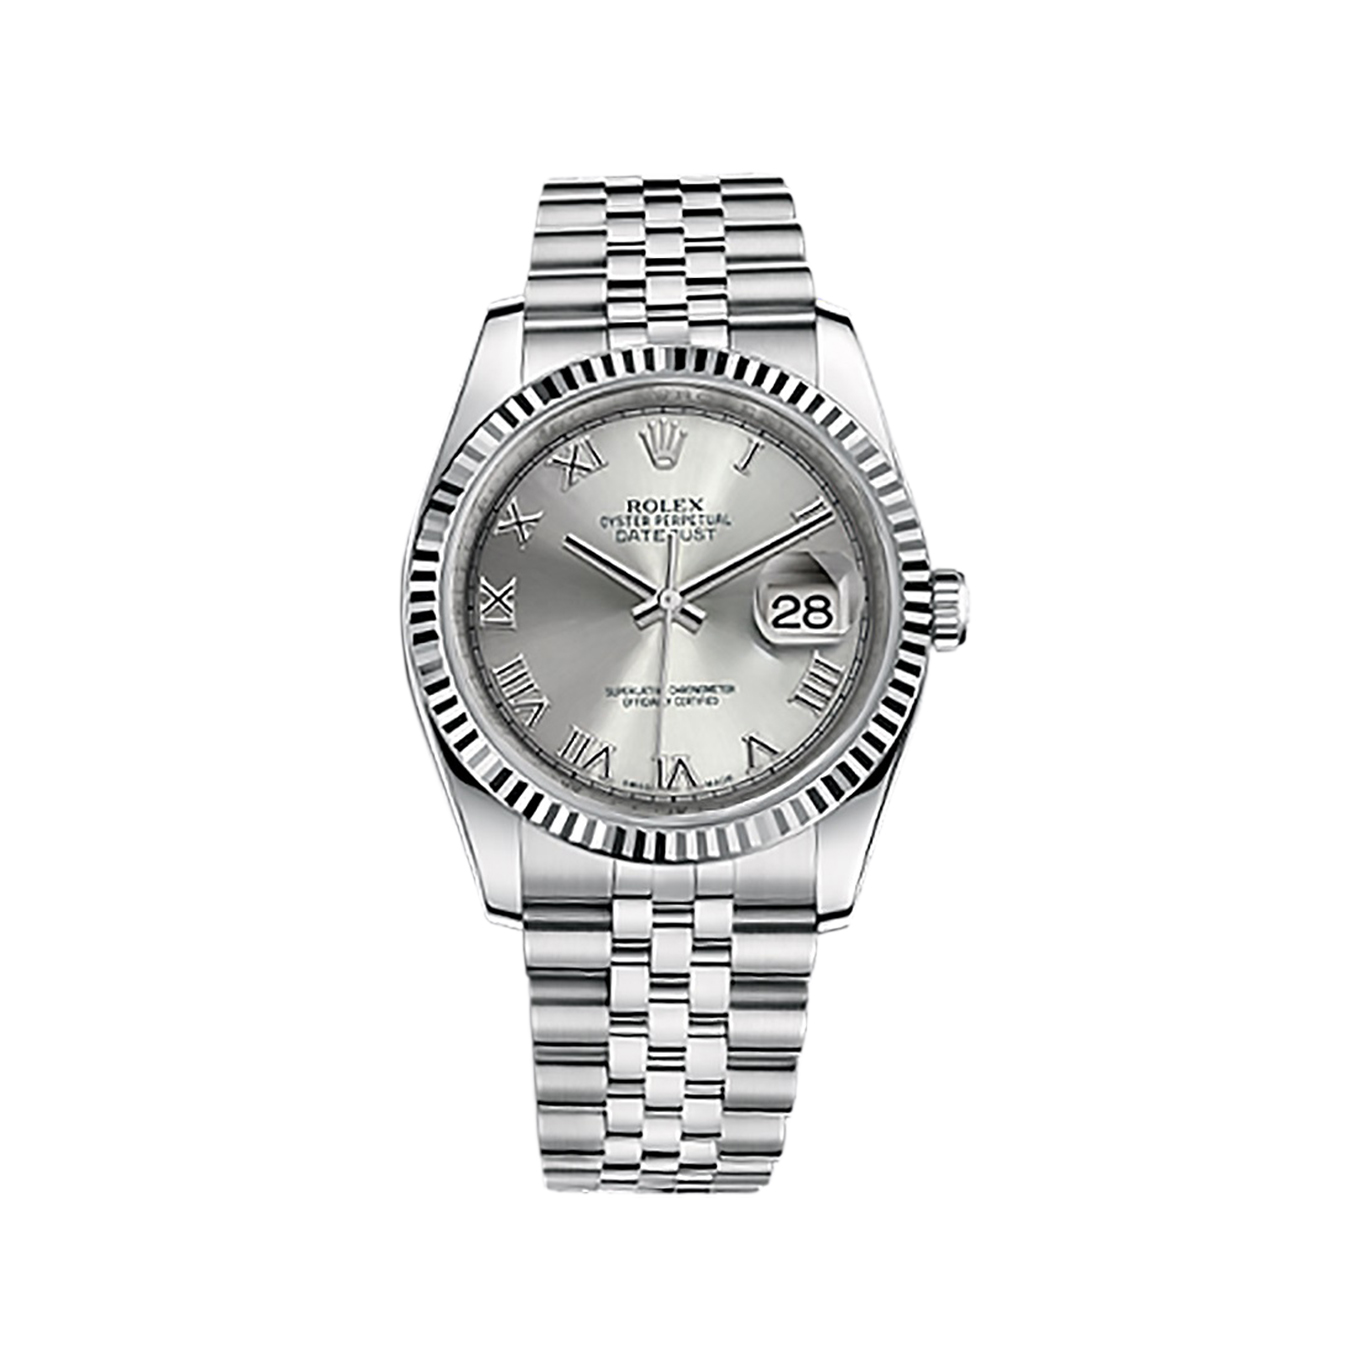 Datejust 36 116234 White Gold & Stainless Steel Watch (Rhodium)